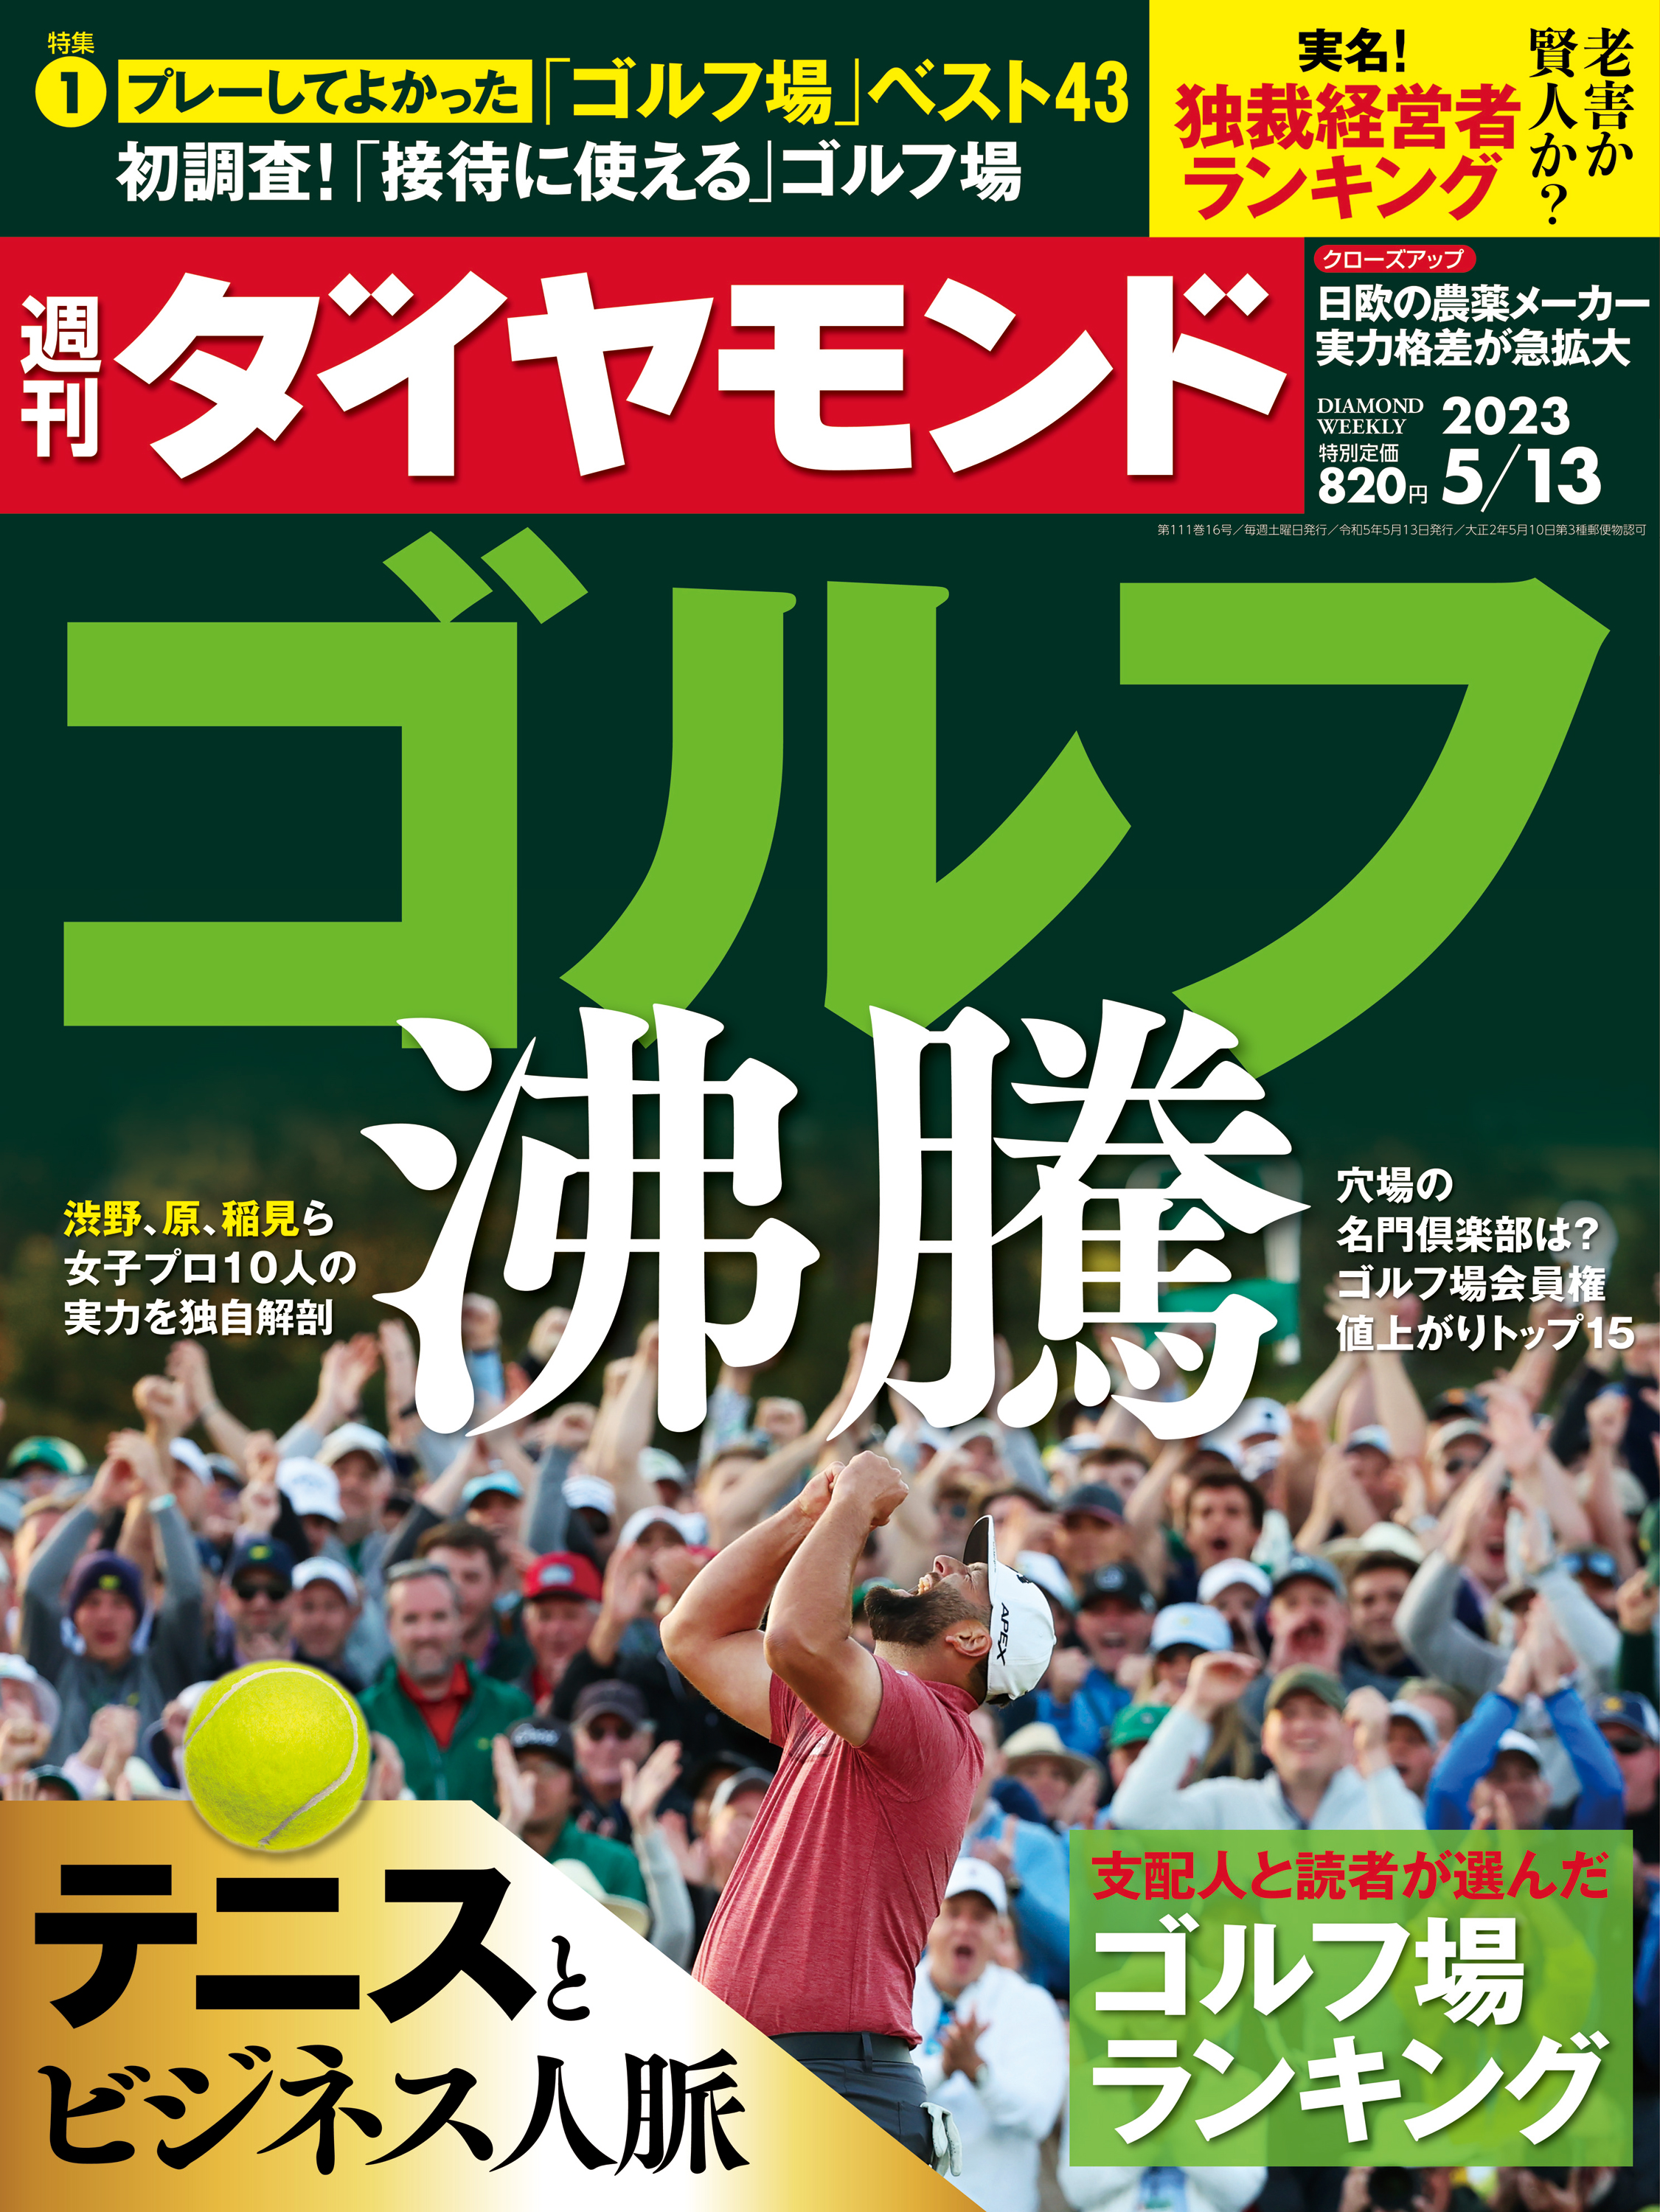 ゴルフ沸騰(週刊ダイヤモンド 2023年5/13号) - ダイヤモンド社 - 雑誌 ...